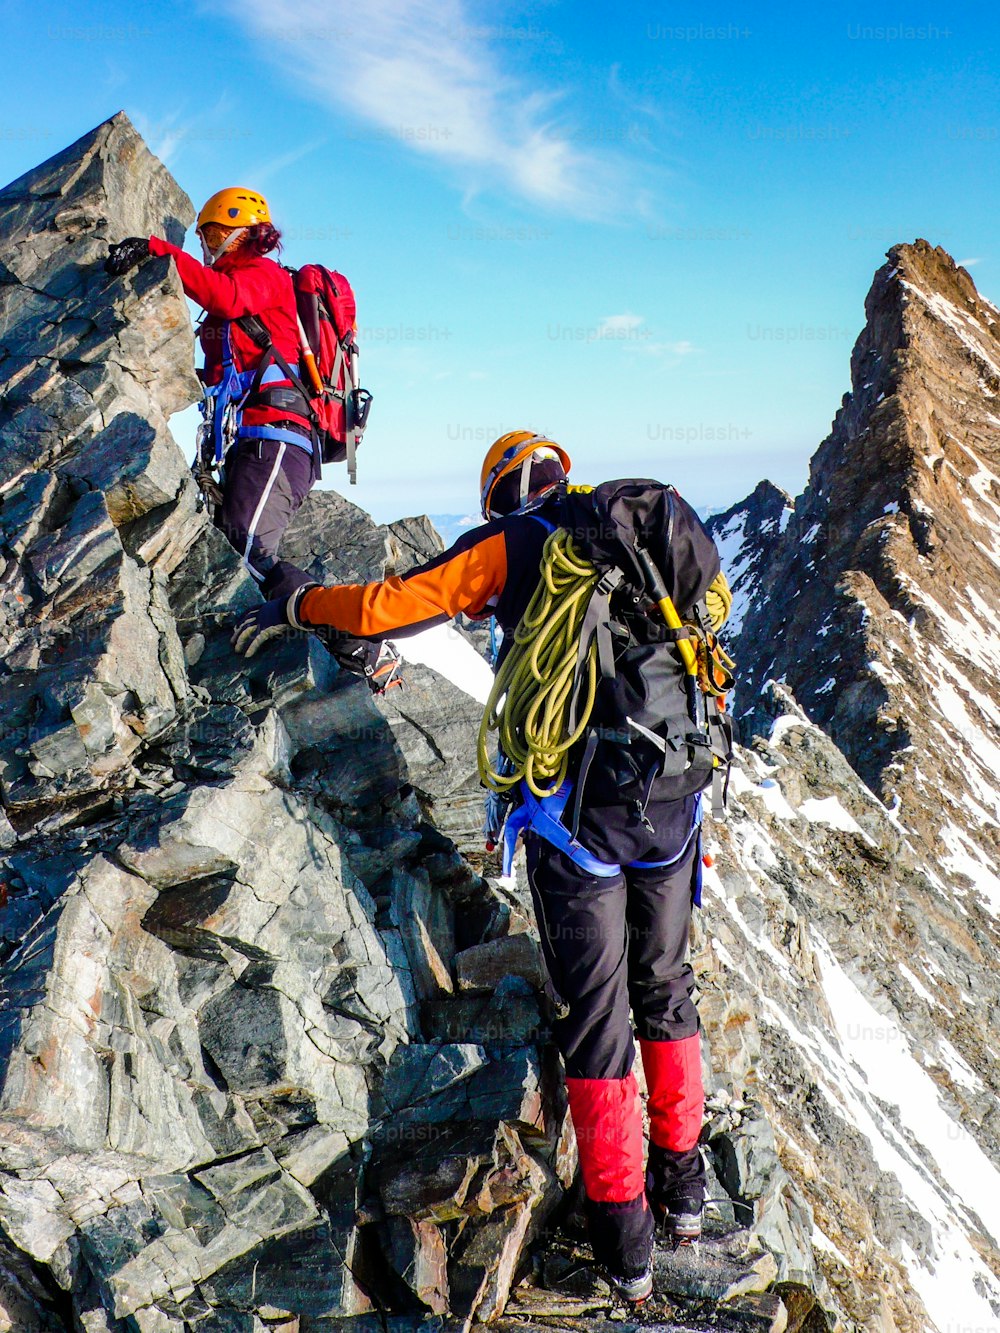 alpiniste et alpiniste sur une crête rocheuse exposée au sommet en route vers un sommet de haute montagne près de Zermatt dans les Alpes suisses